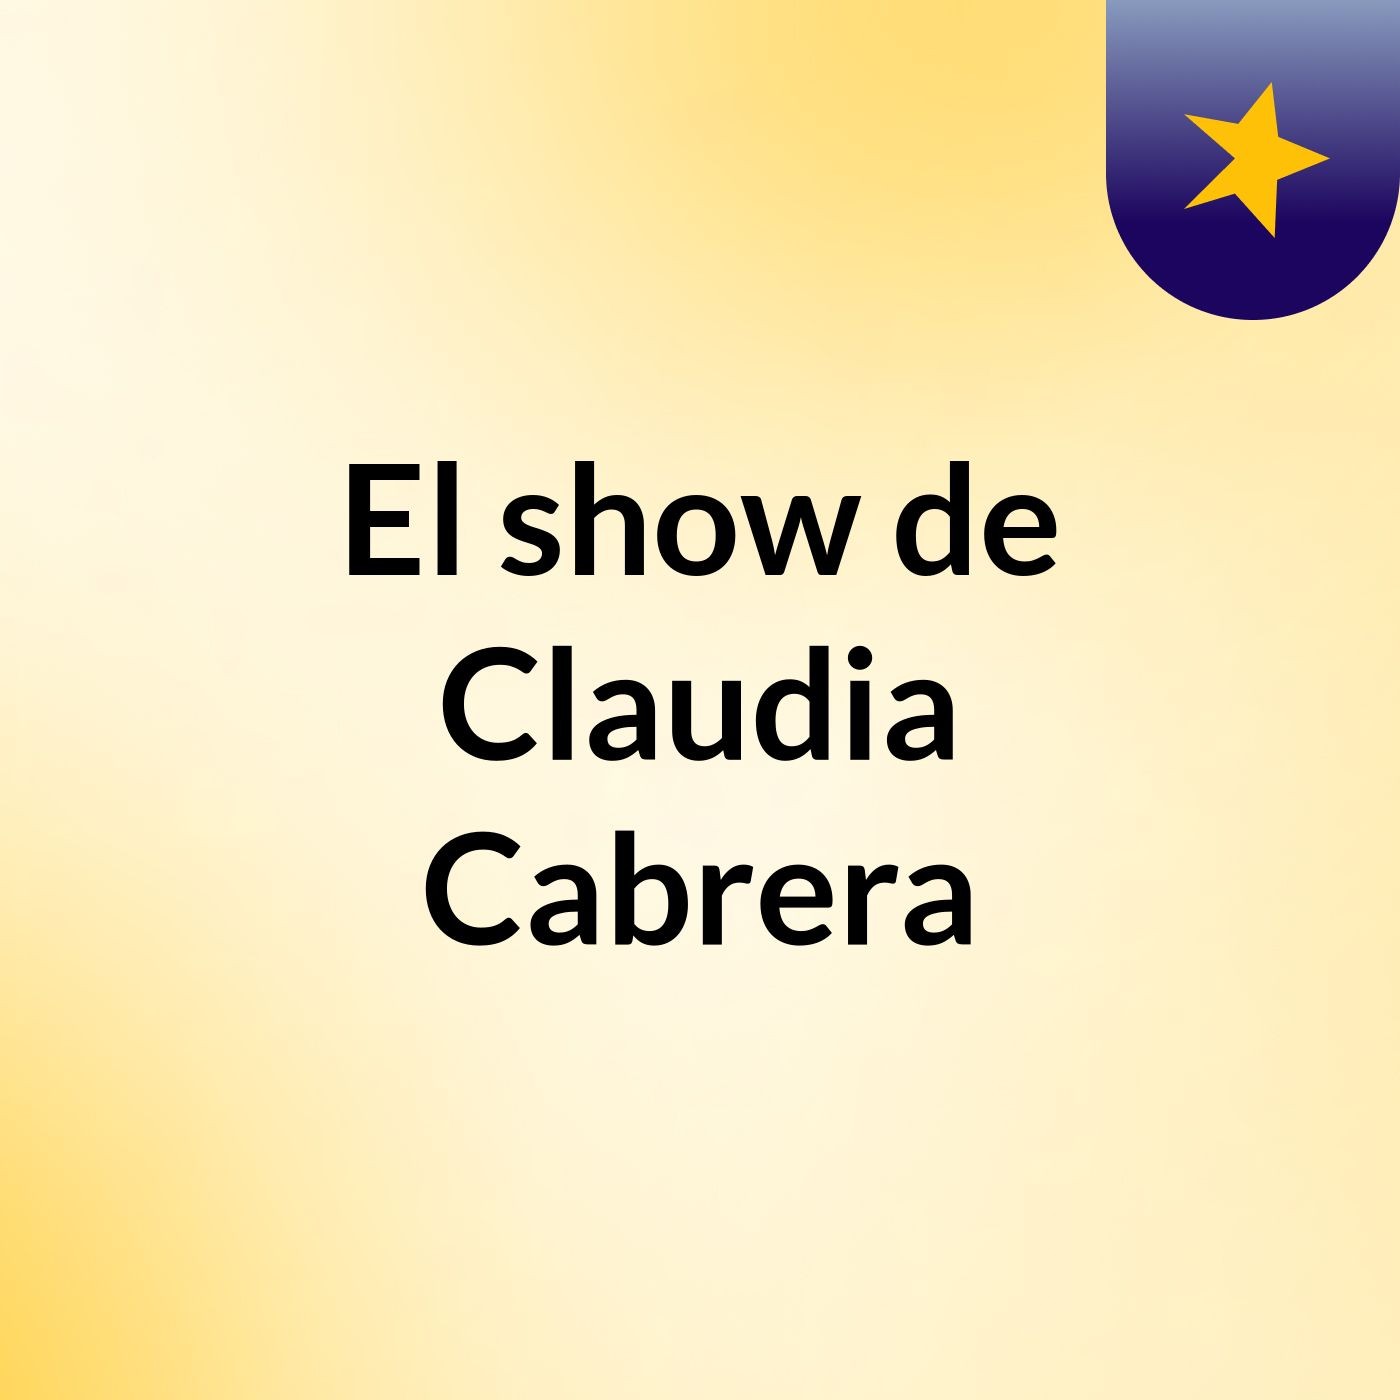 El show de Claudia Cabrera